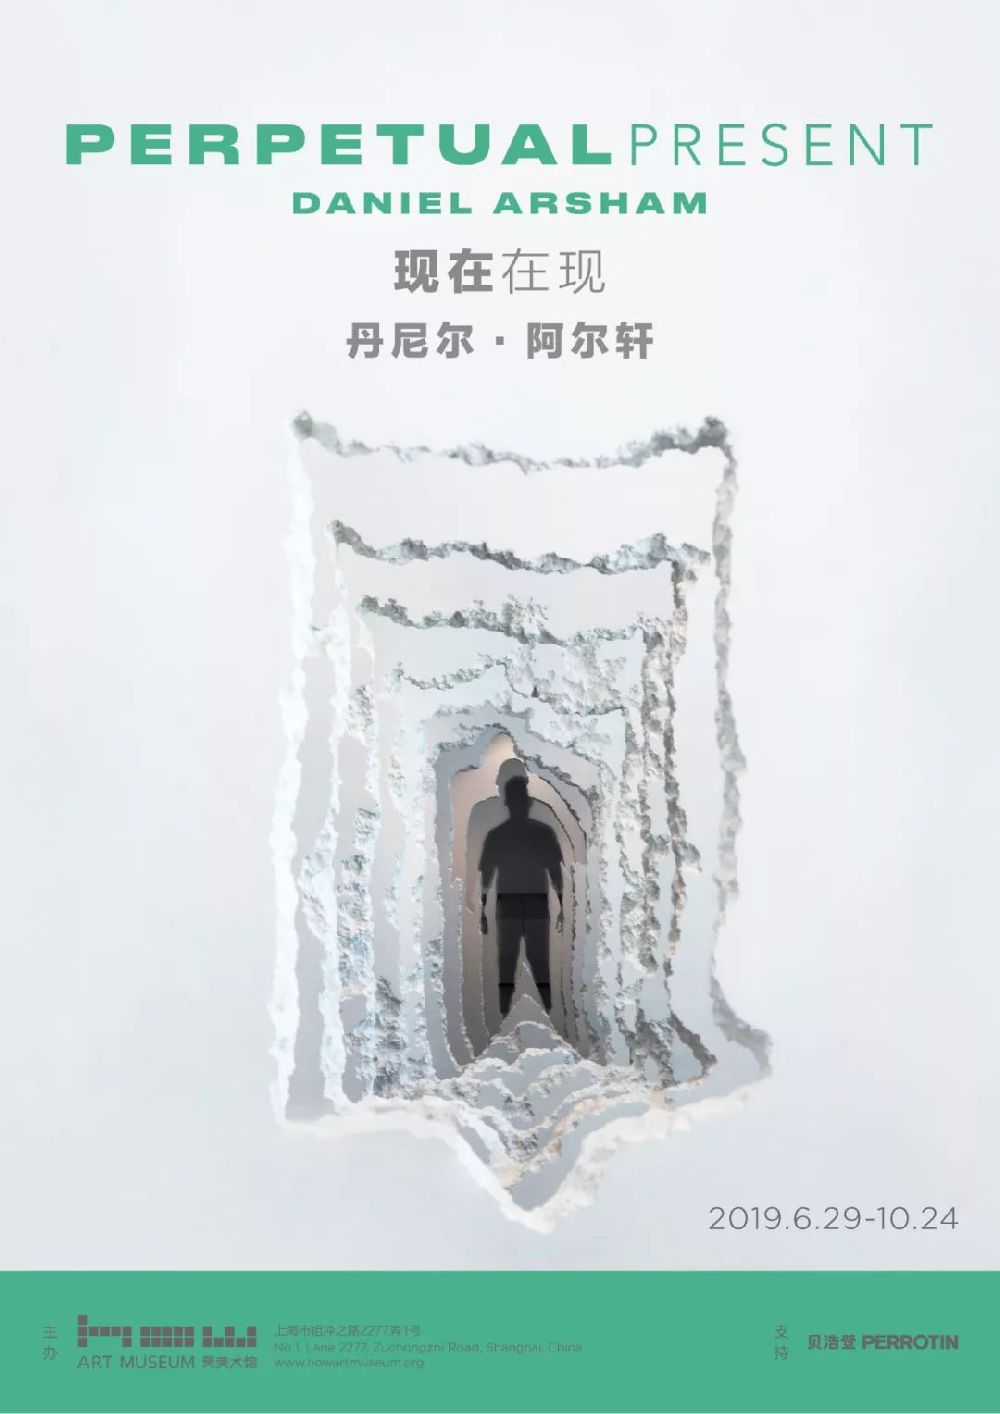 上海昊美术馆将呈现丹尼尔阿尔轩个展：现在在现